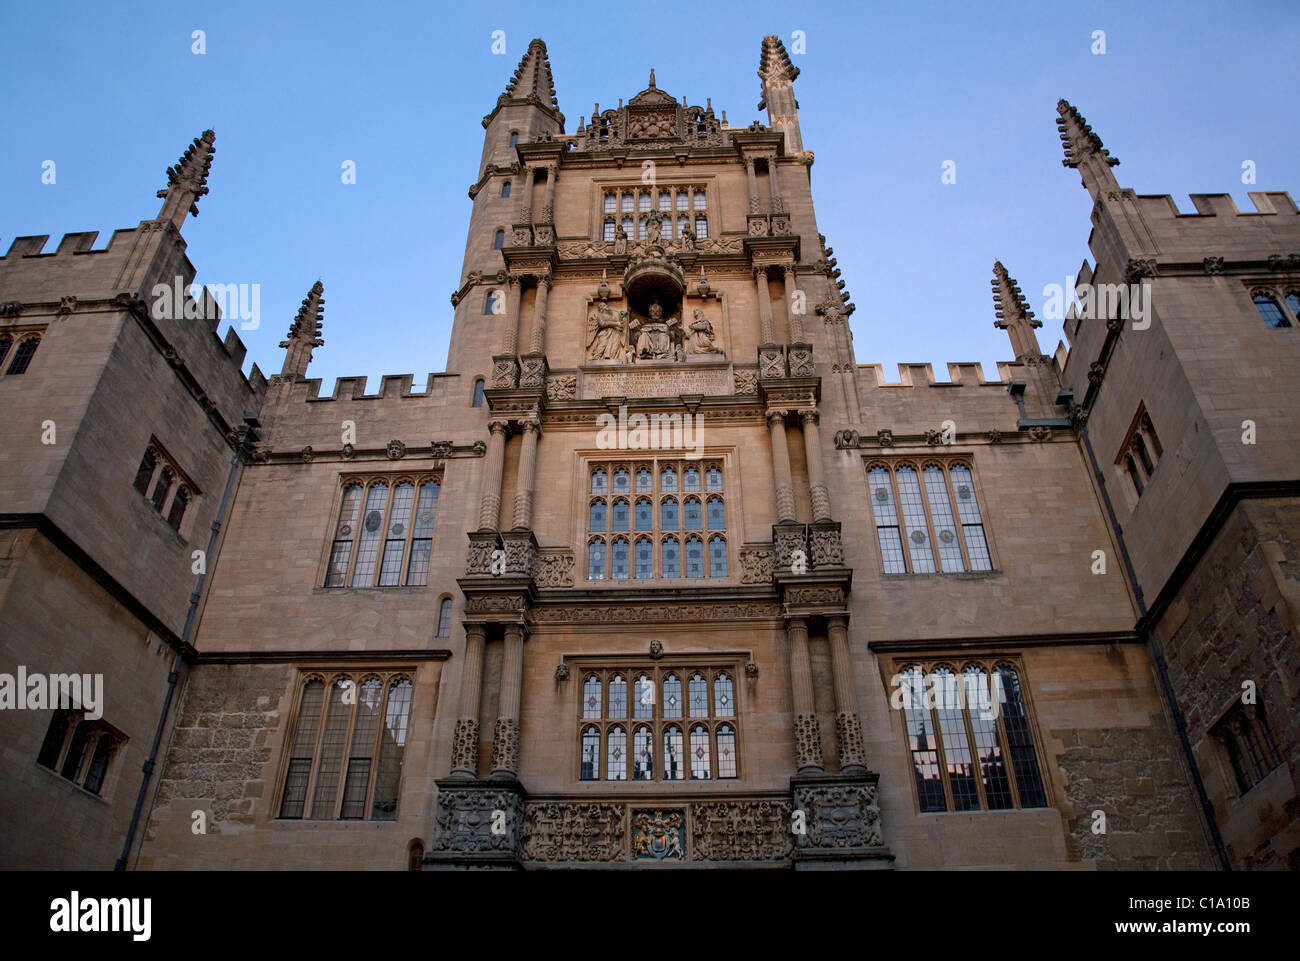 Ingresso della biblioteca Bodleian Library / Bodley dell'Università di Oxford, Oxfordshire, England, Regno Unito Foto Stock